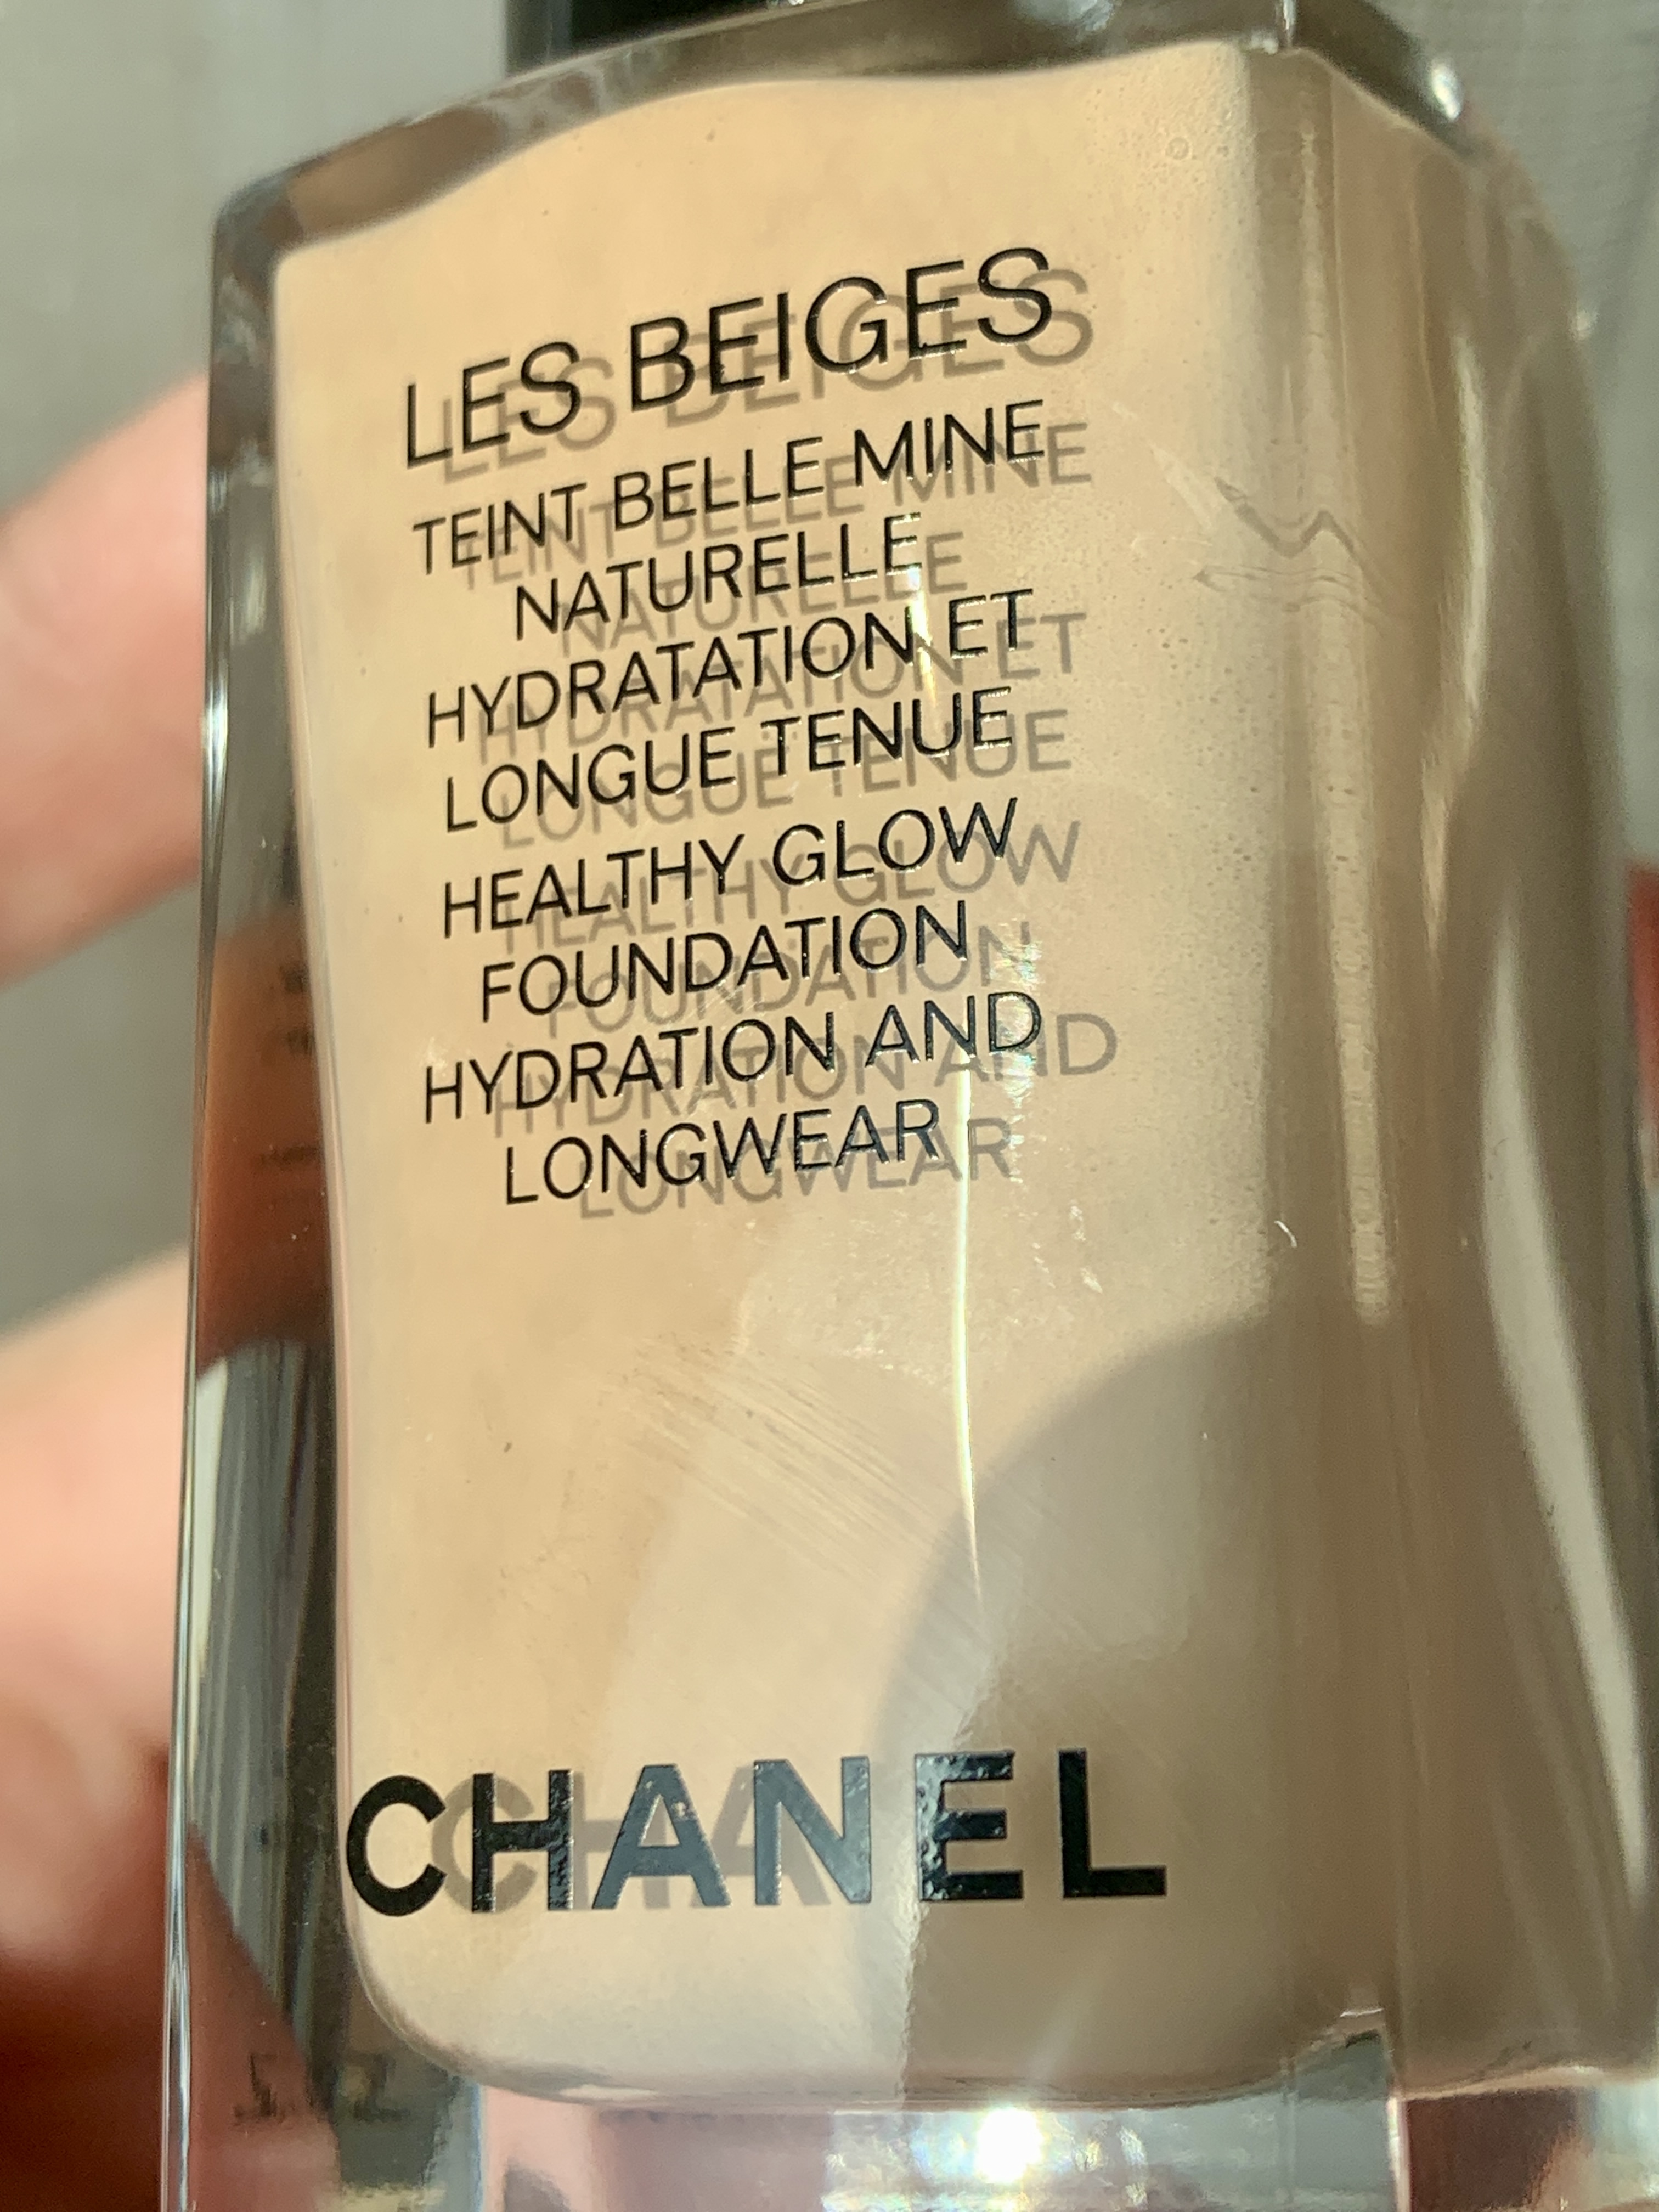 Chanel Les Beiges Teint Belle Mine Naturelle